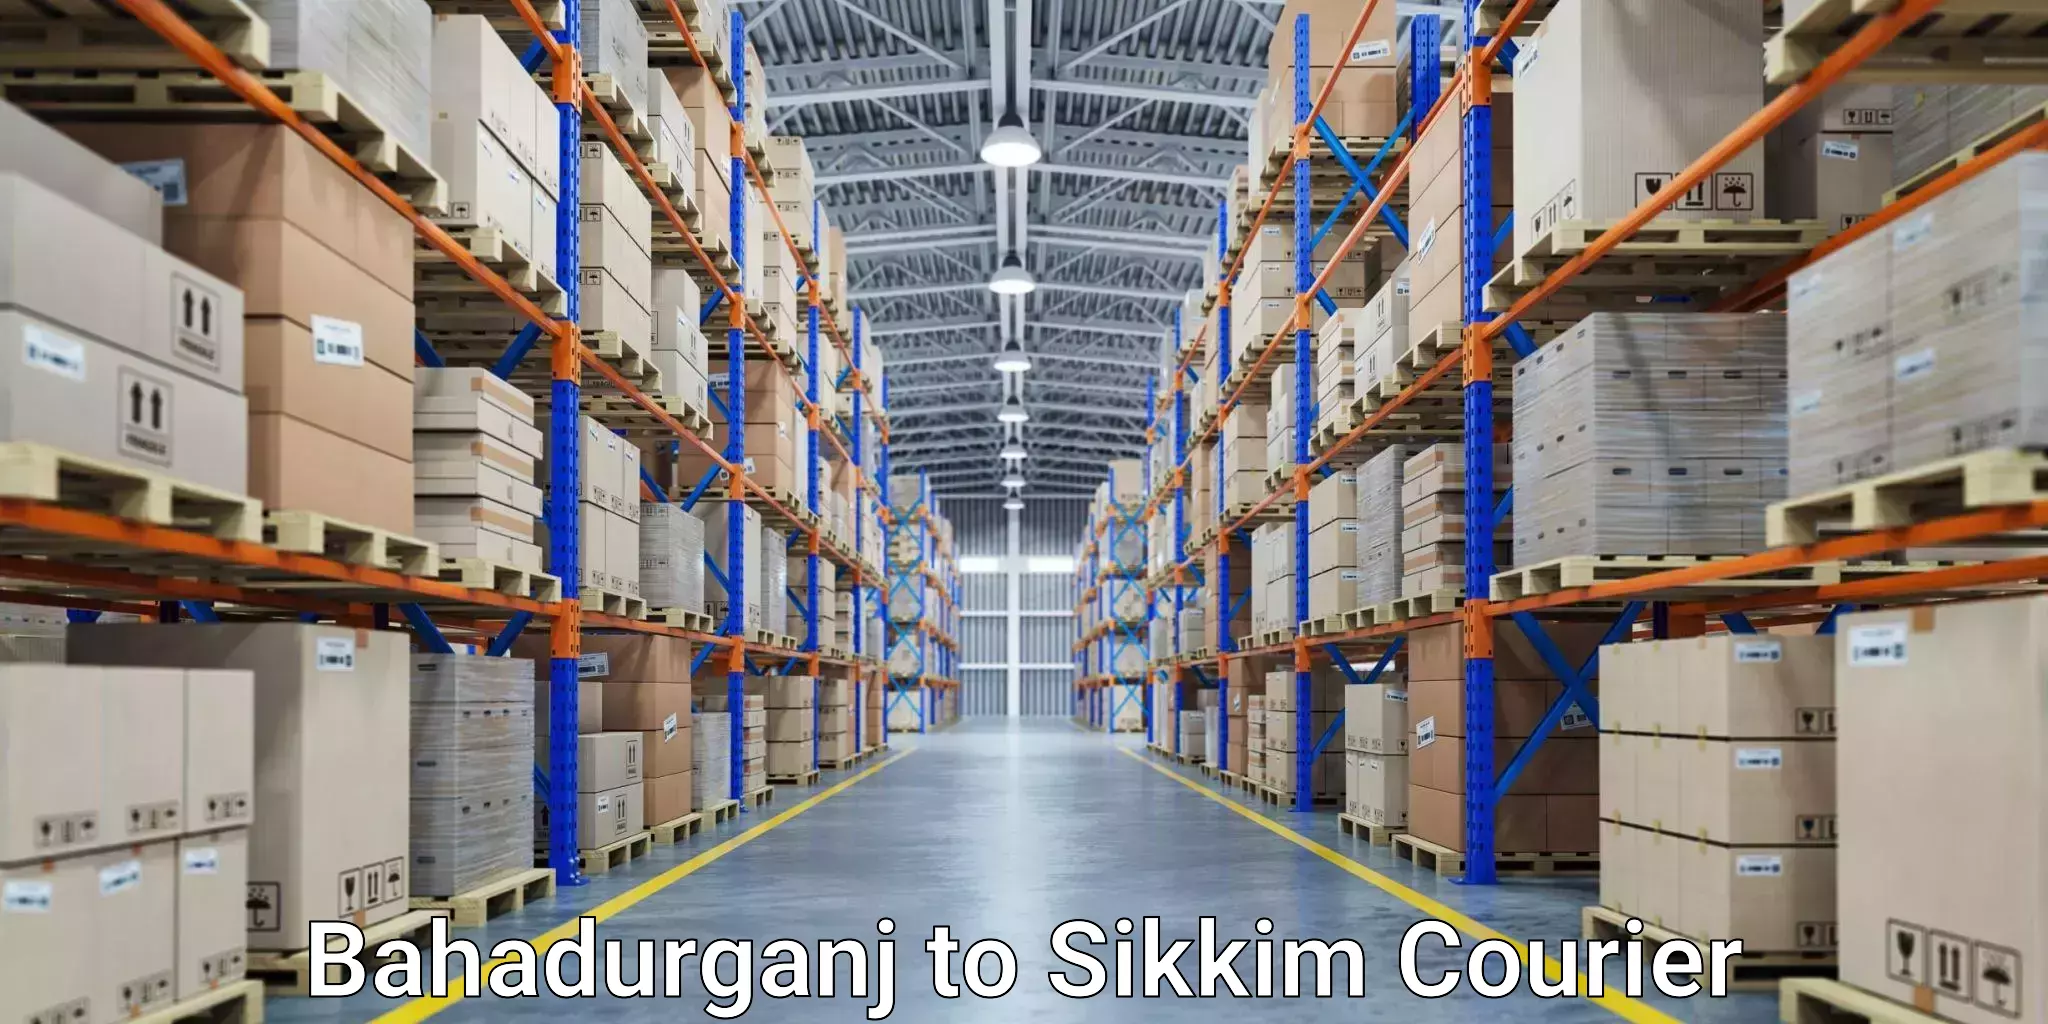 Courier service comparison Bahadurganj to South Sikkim